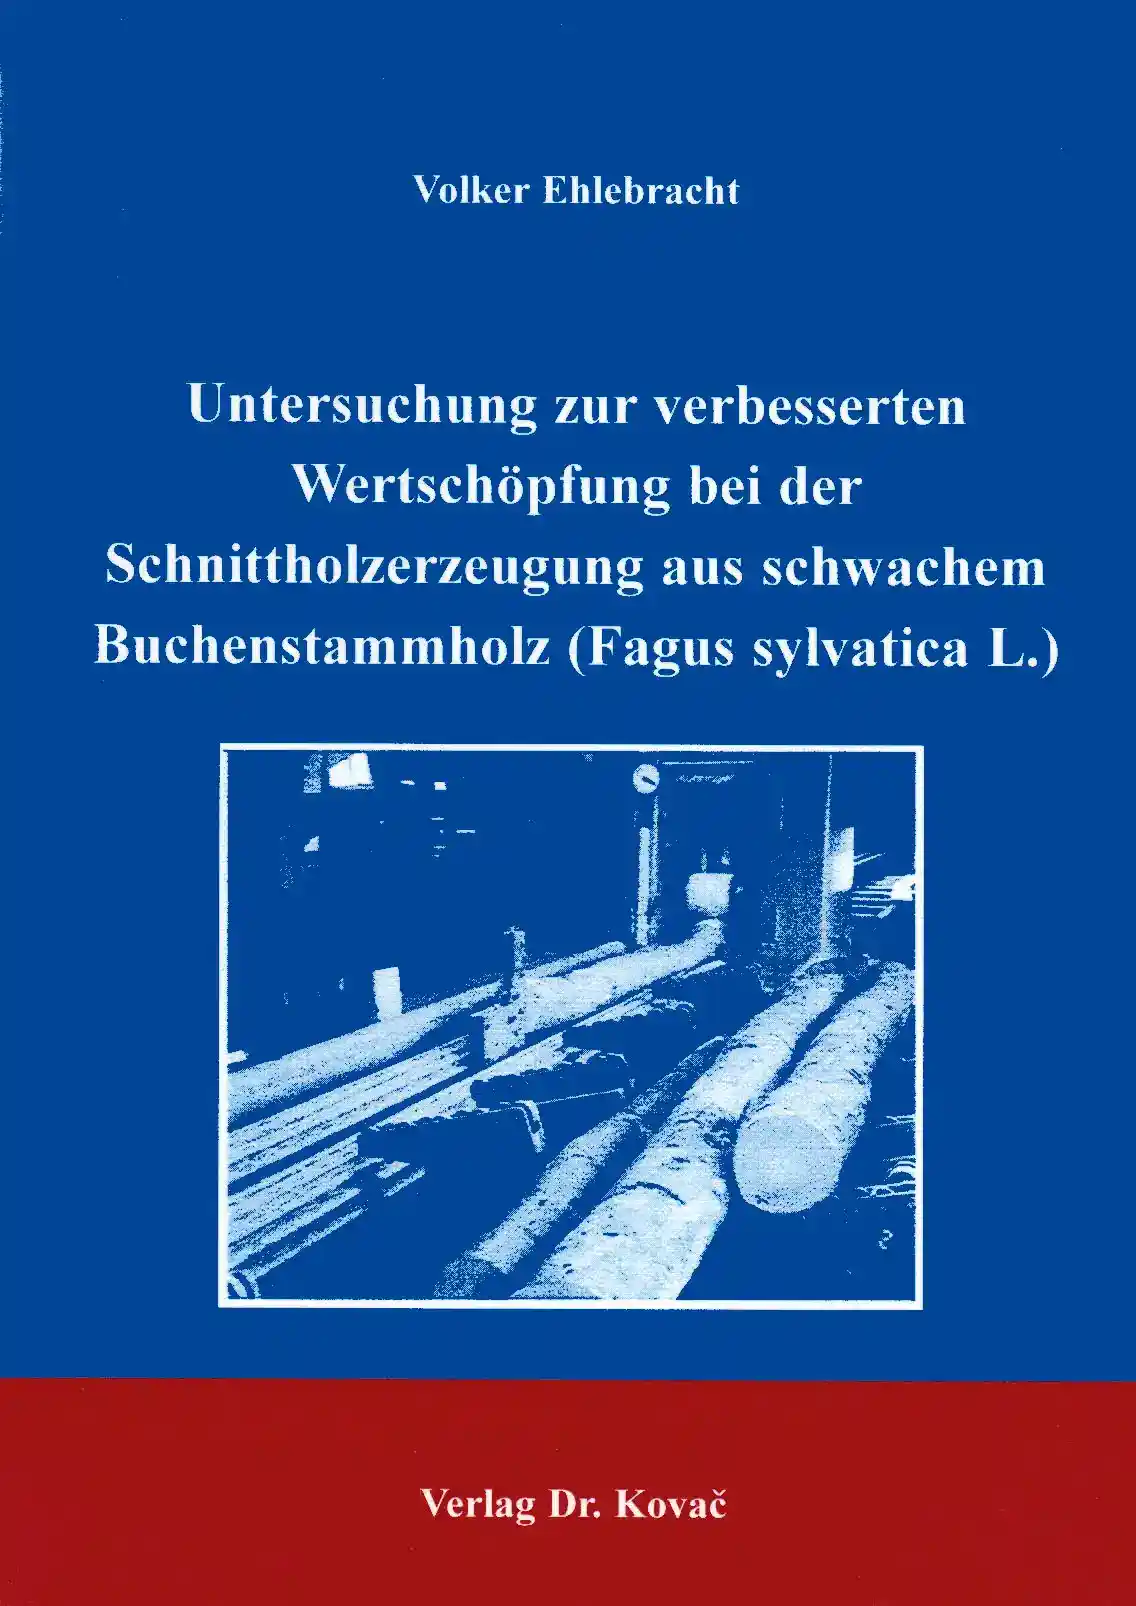 Untersuchung zur verbesserten Wertschöpfung bei der Schnittholzerzeugung aus schwachem Buchenstammholz (Fagus sylvatica L.) (Doktorarbeit)